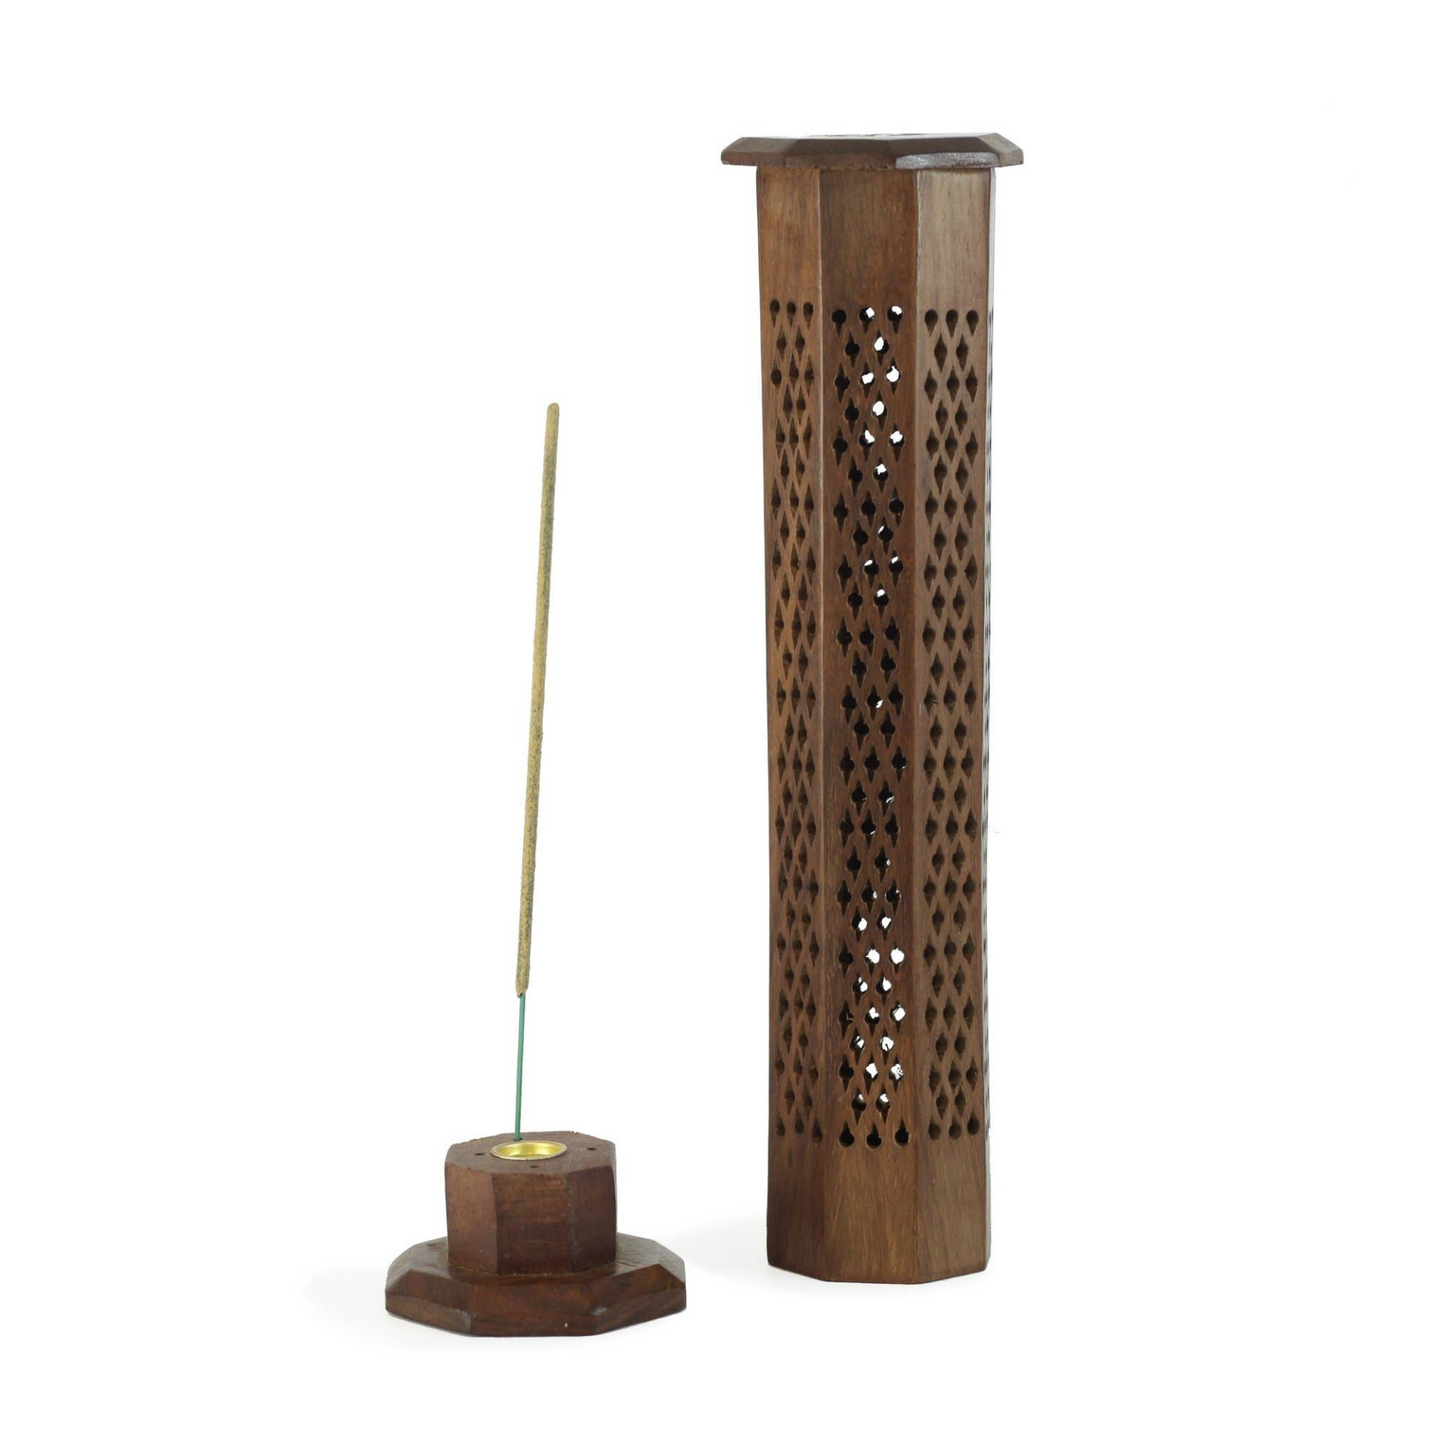 Wooden Decorative Handcarved Tower Incense Burner -12"